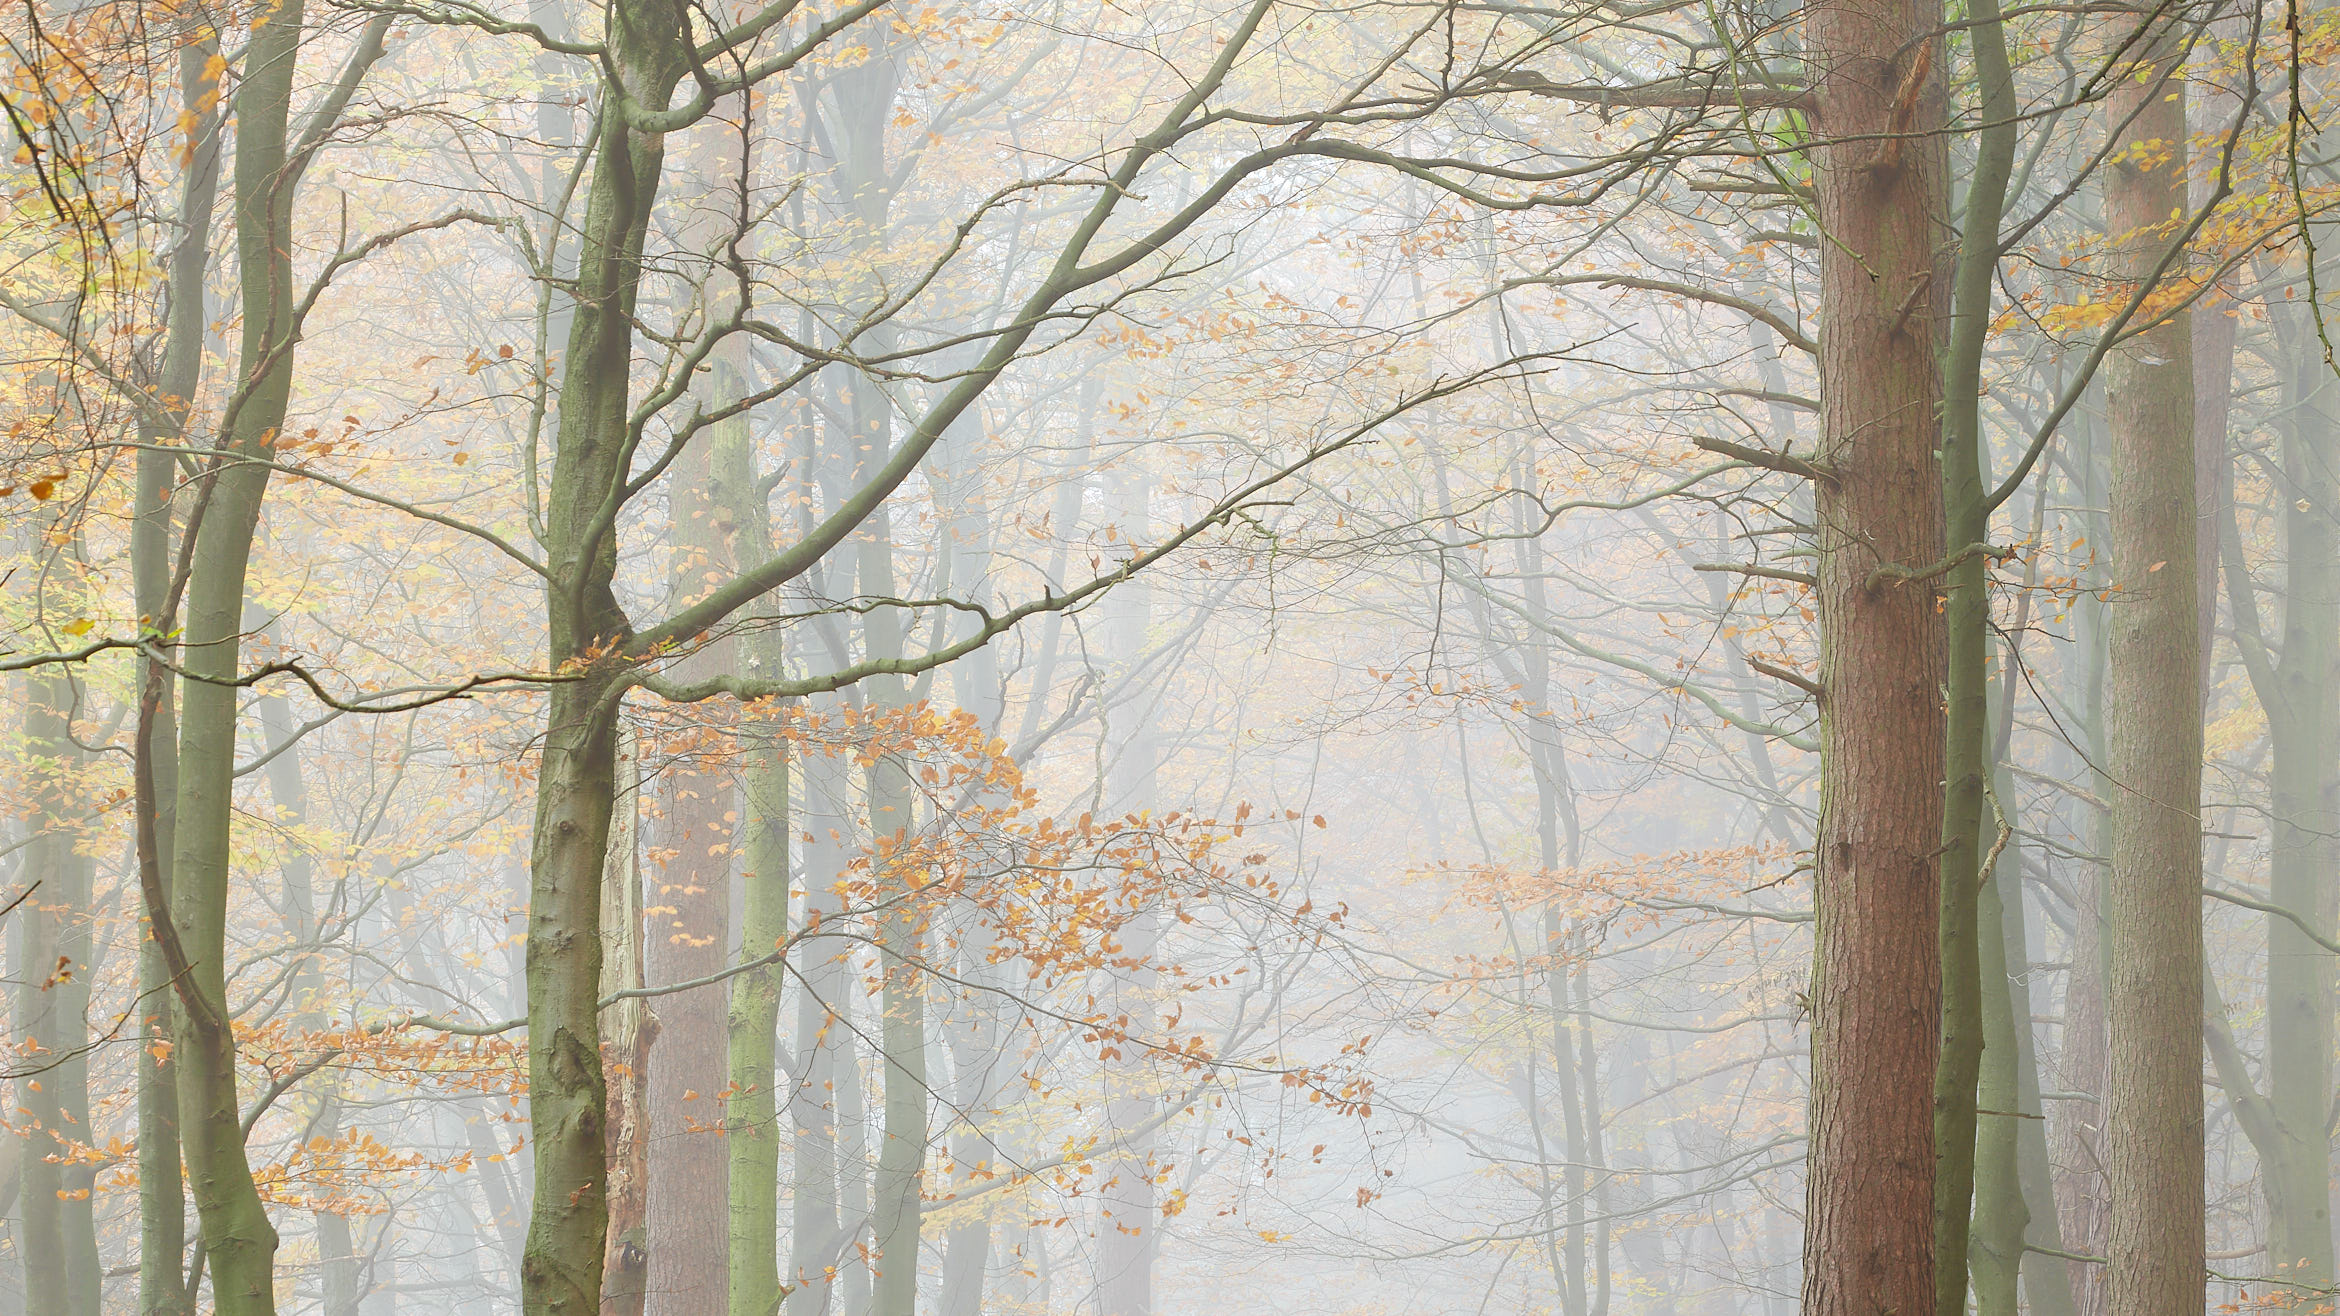 Autumn, Heatherdene / High Stone Gallery / © Ian Daisley